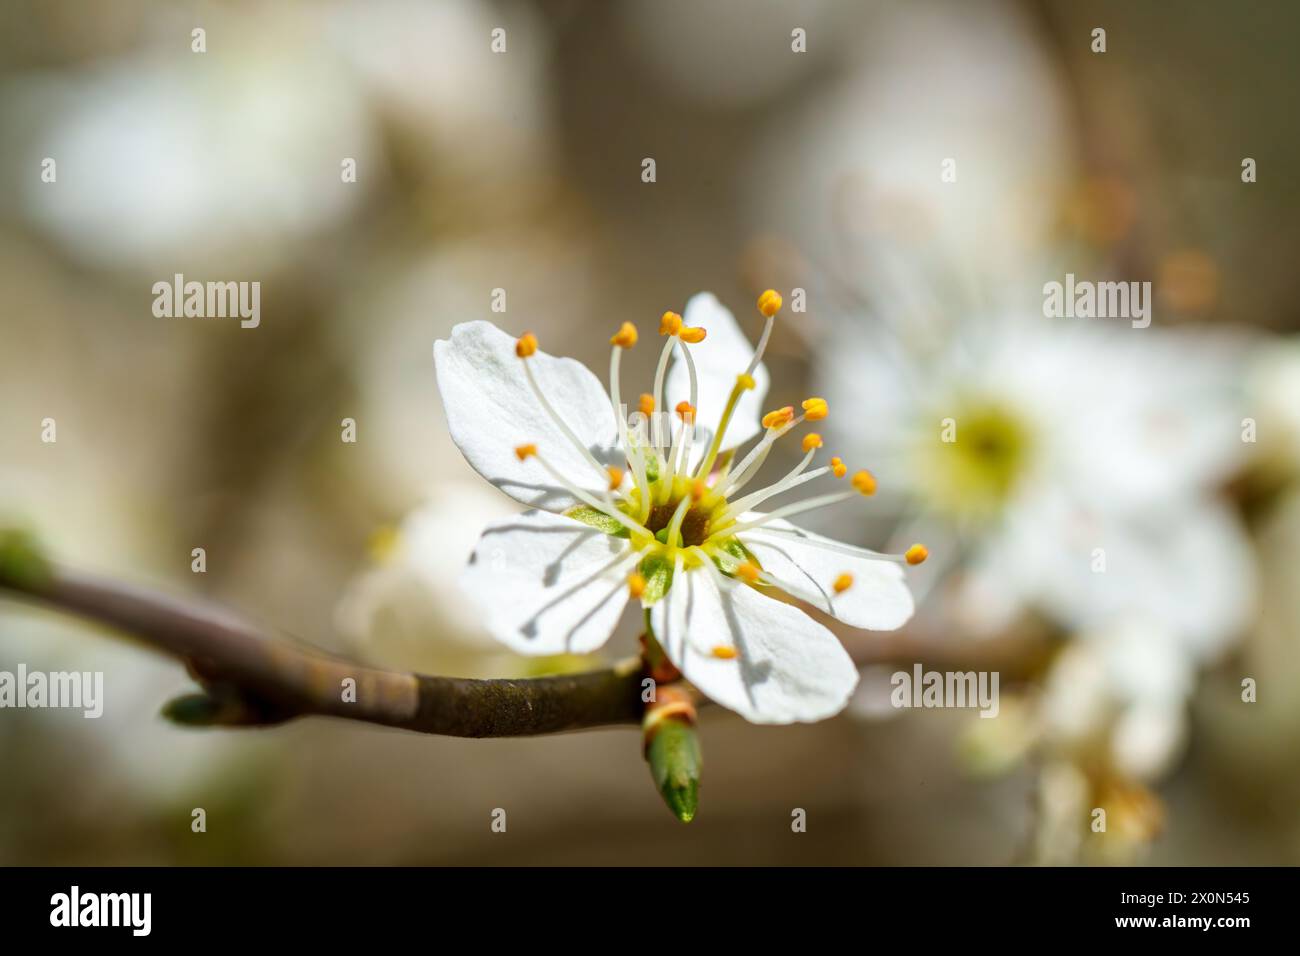 Macro photographie d'une fleur blanche avec étamines jaunes sur une brindille d'une plante à fleurs, capturant la beauté de cette fleur sauvage en gros plan Banque D'Images